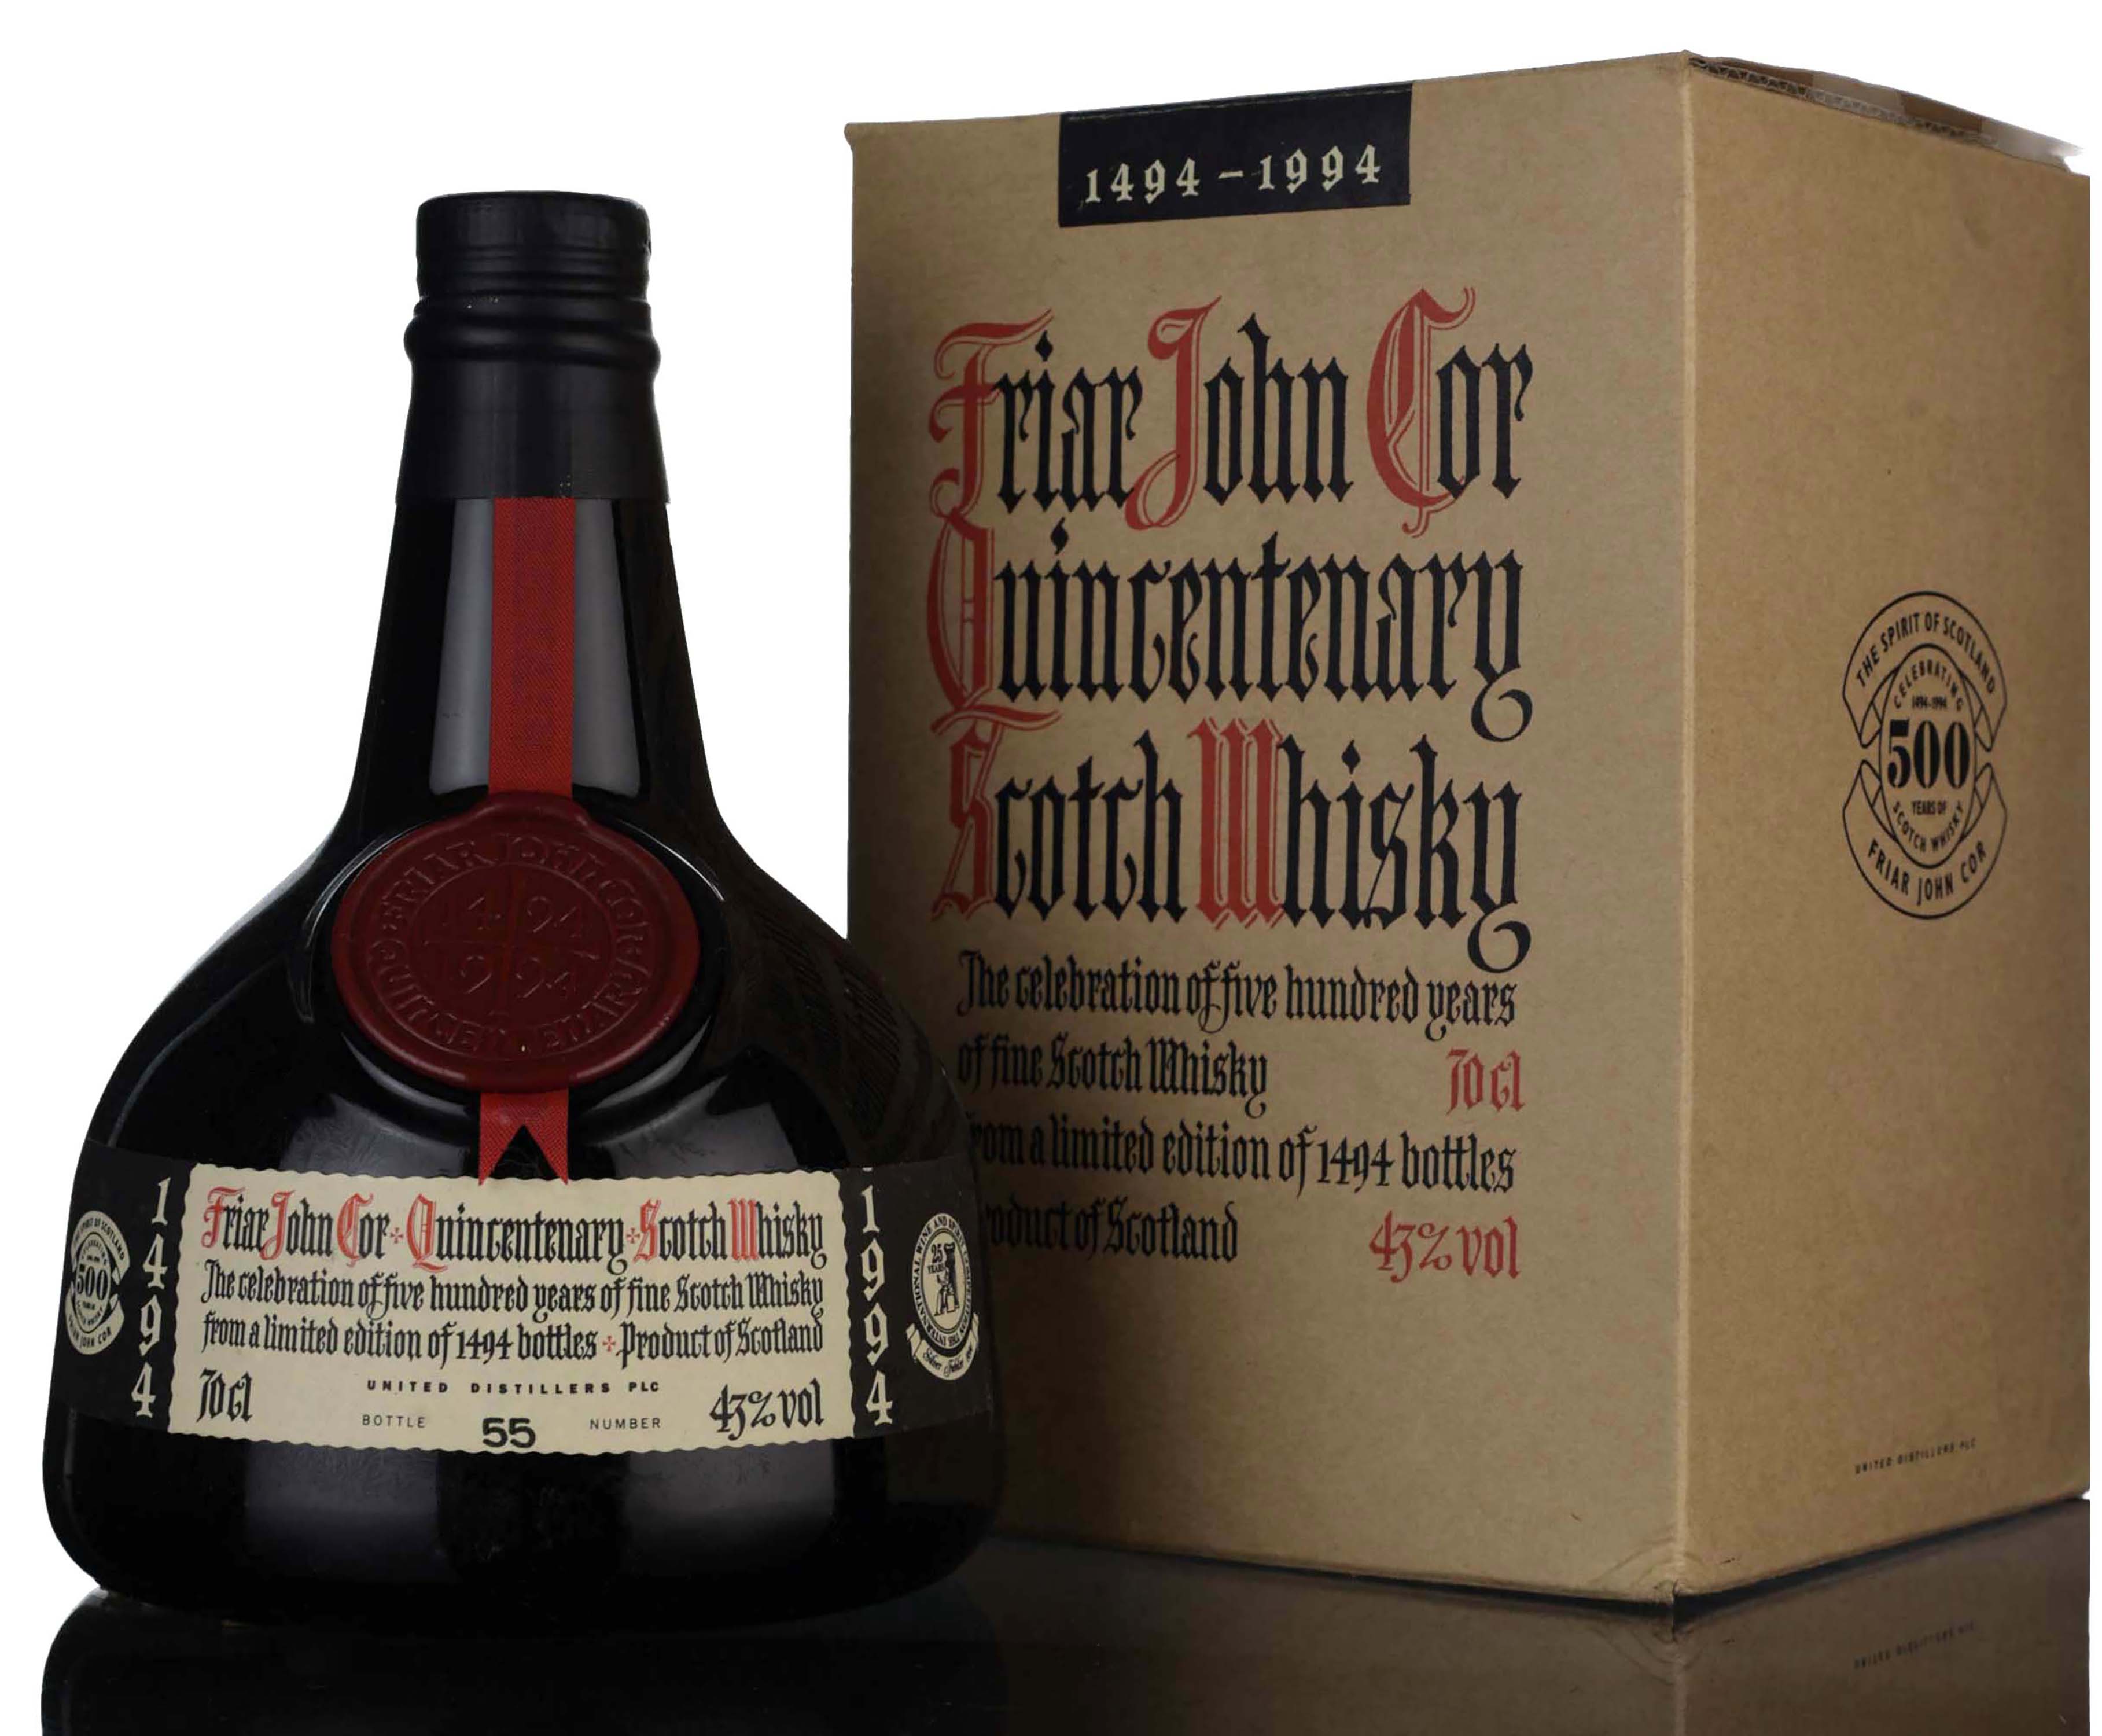 Friar John Cor Quincentenary Of Scotch Whisky 1494-1994